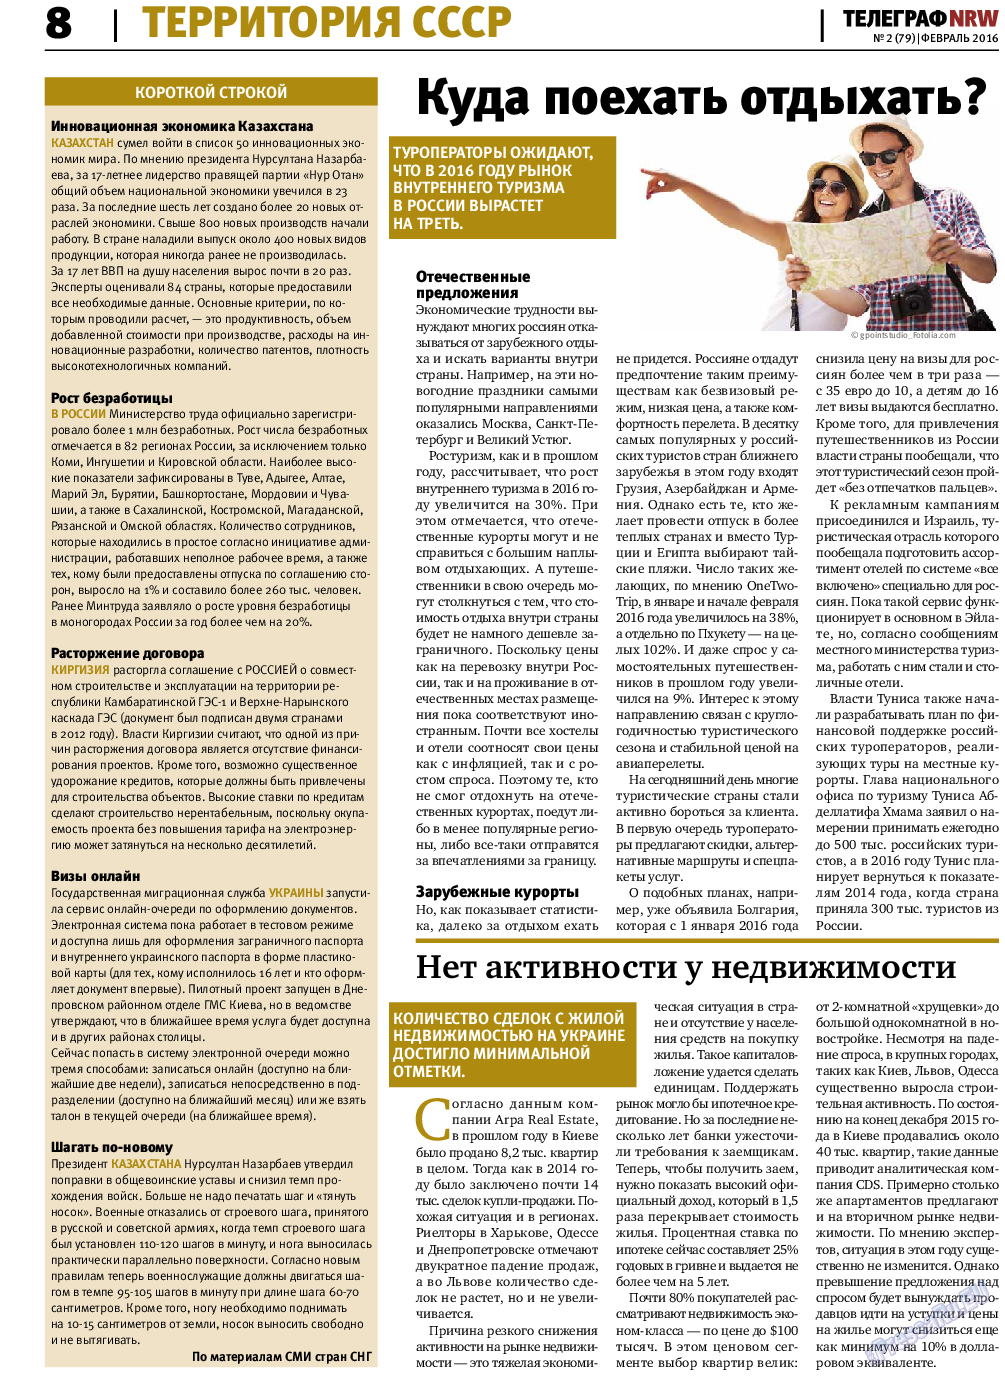 Телеграф NRW (газета). 2016 год, номер 2, стр. 8